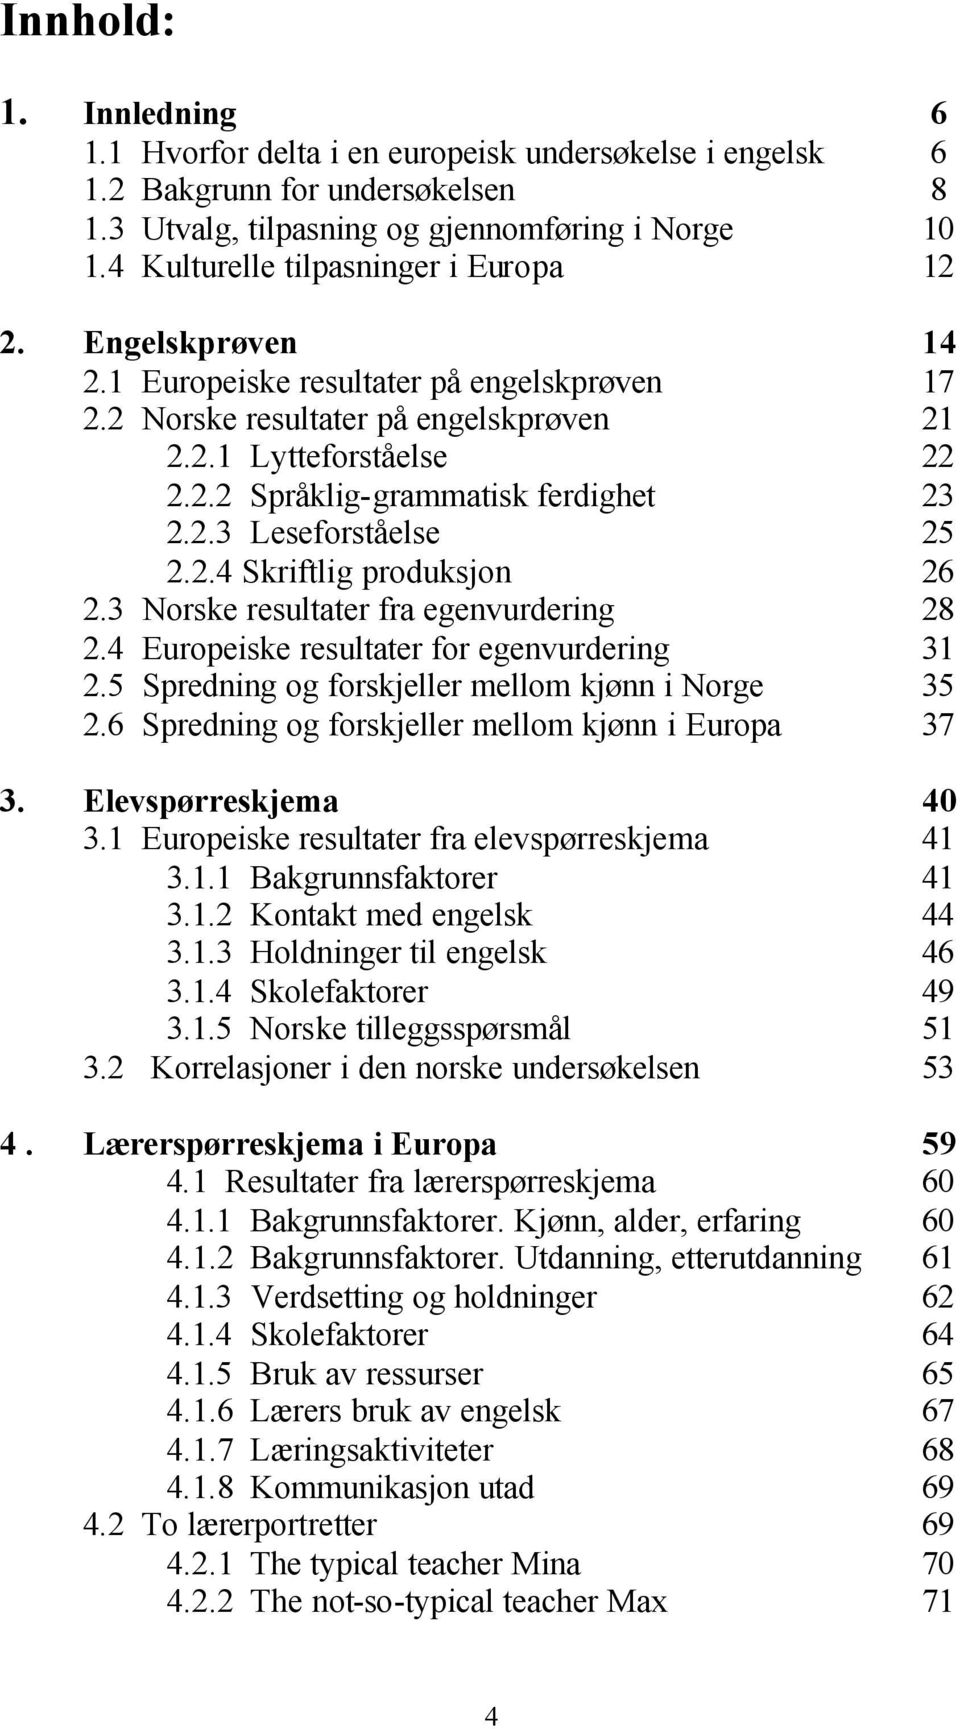 2.3 Leseforståelse 25 2.2.4 Skriftlig produksjon 26 2.3 Norske resultater fra egenvurdering 28 2.4 Europeiske resultater for egenvurdering 31 2.5 Spredning og forskjeller mellom kjønn i Norge 35 2.